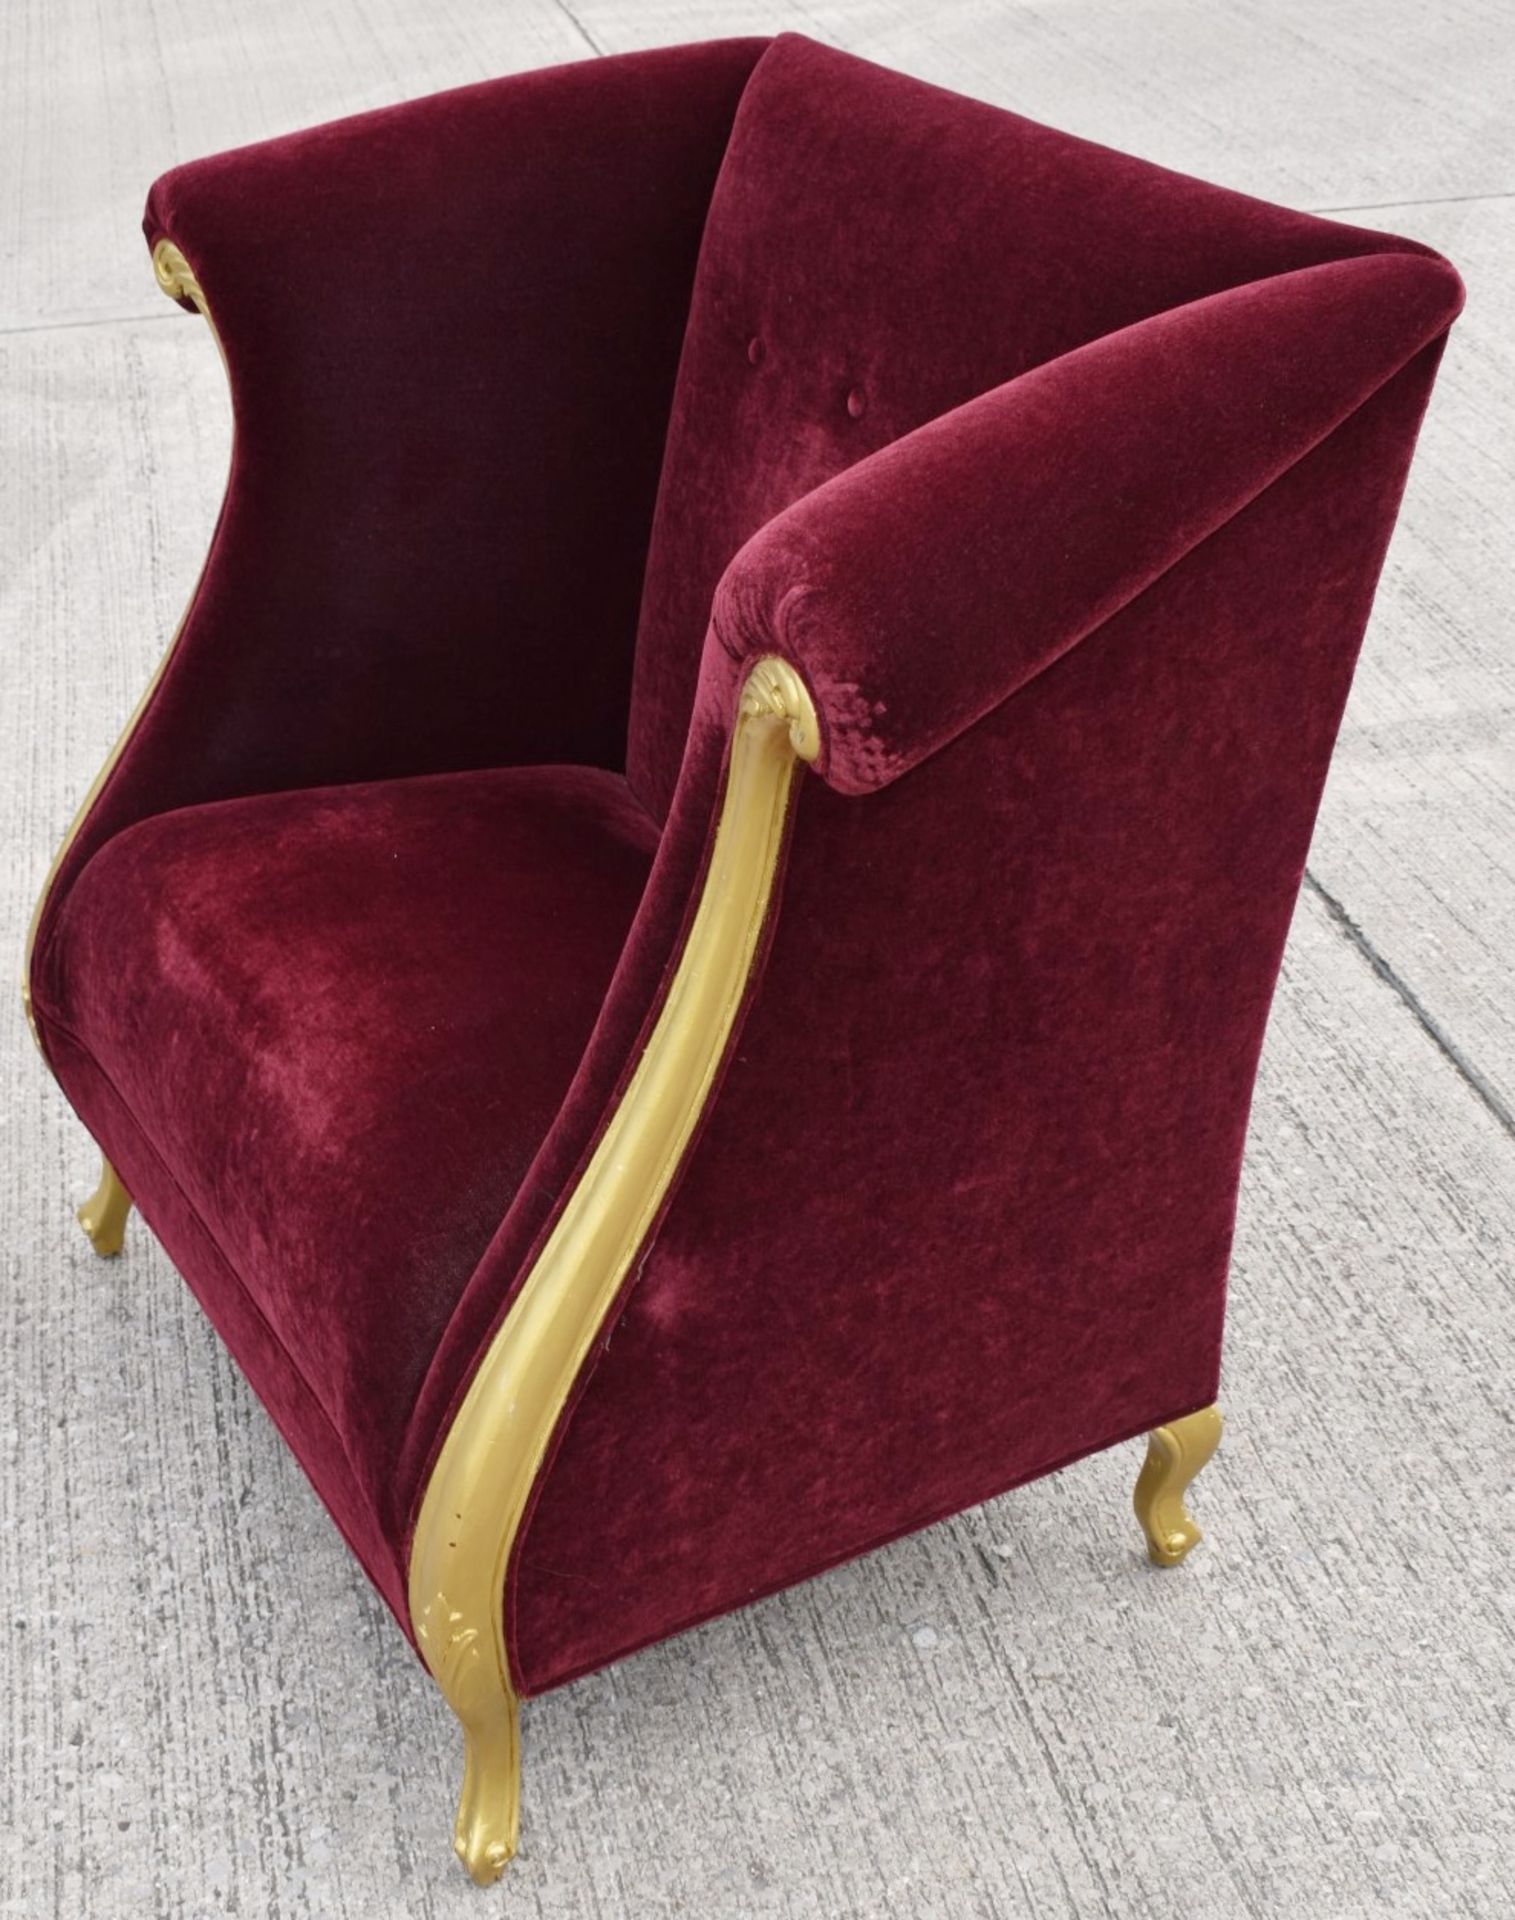 1 x CHRISTOPHER GUY Bespoke Opulent Velvet Upholstered Oversized Armchair - Original Price £4,000 - Image 4 of 10